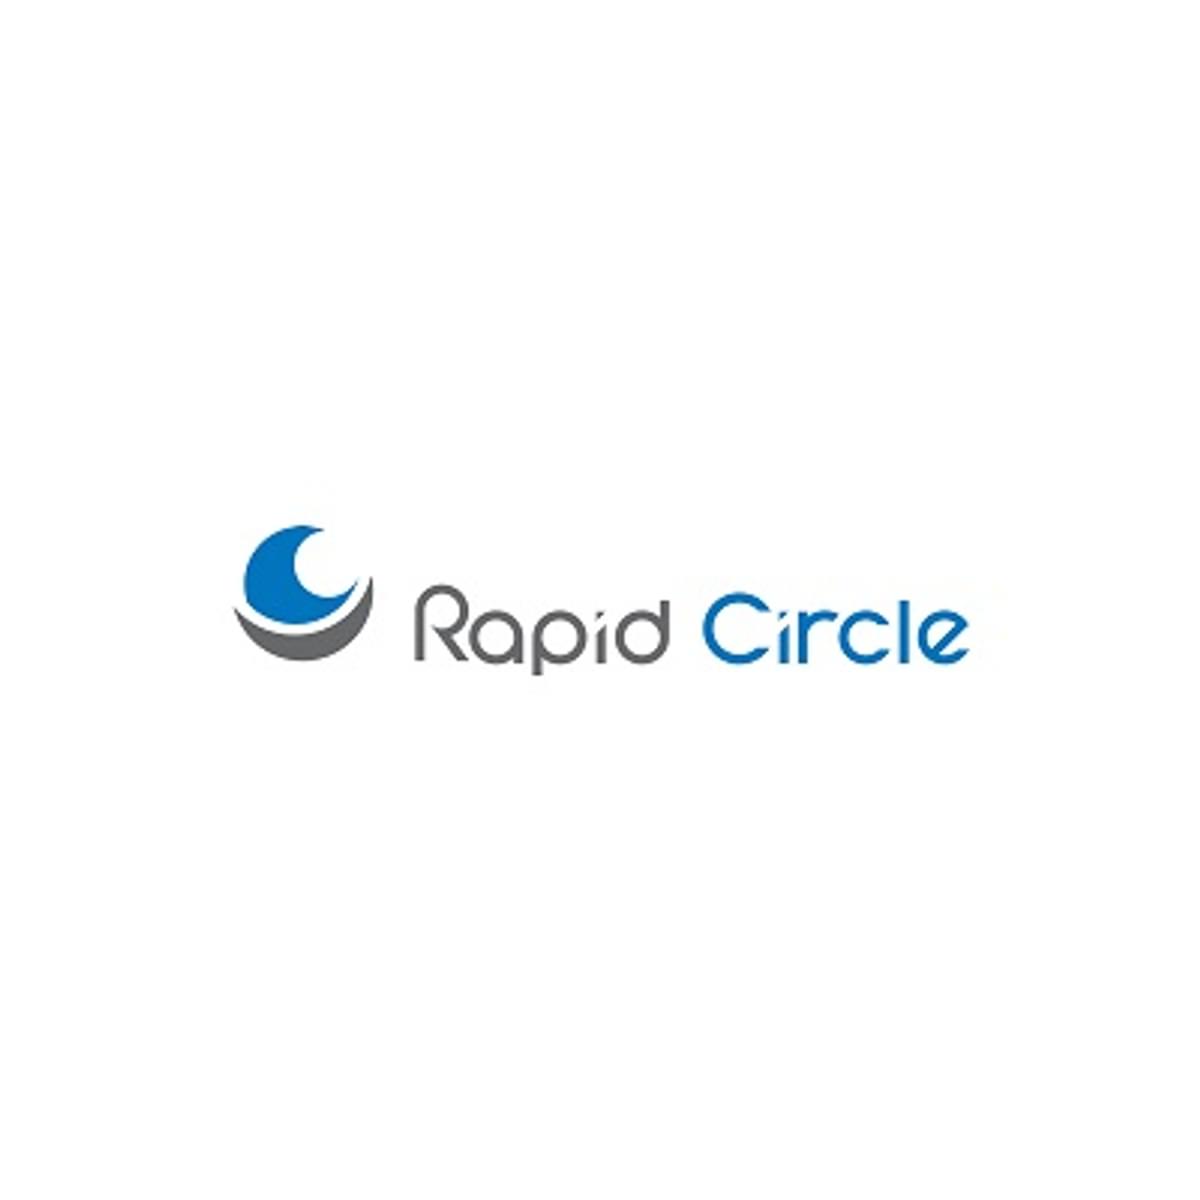 Rapid Circle koopt Australische Adopt & Embrace image